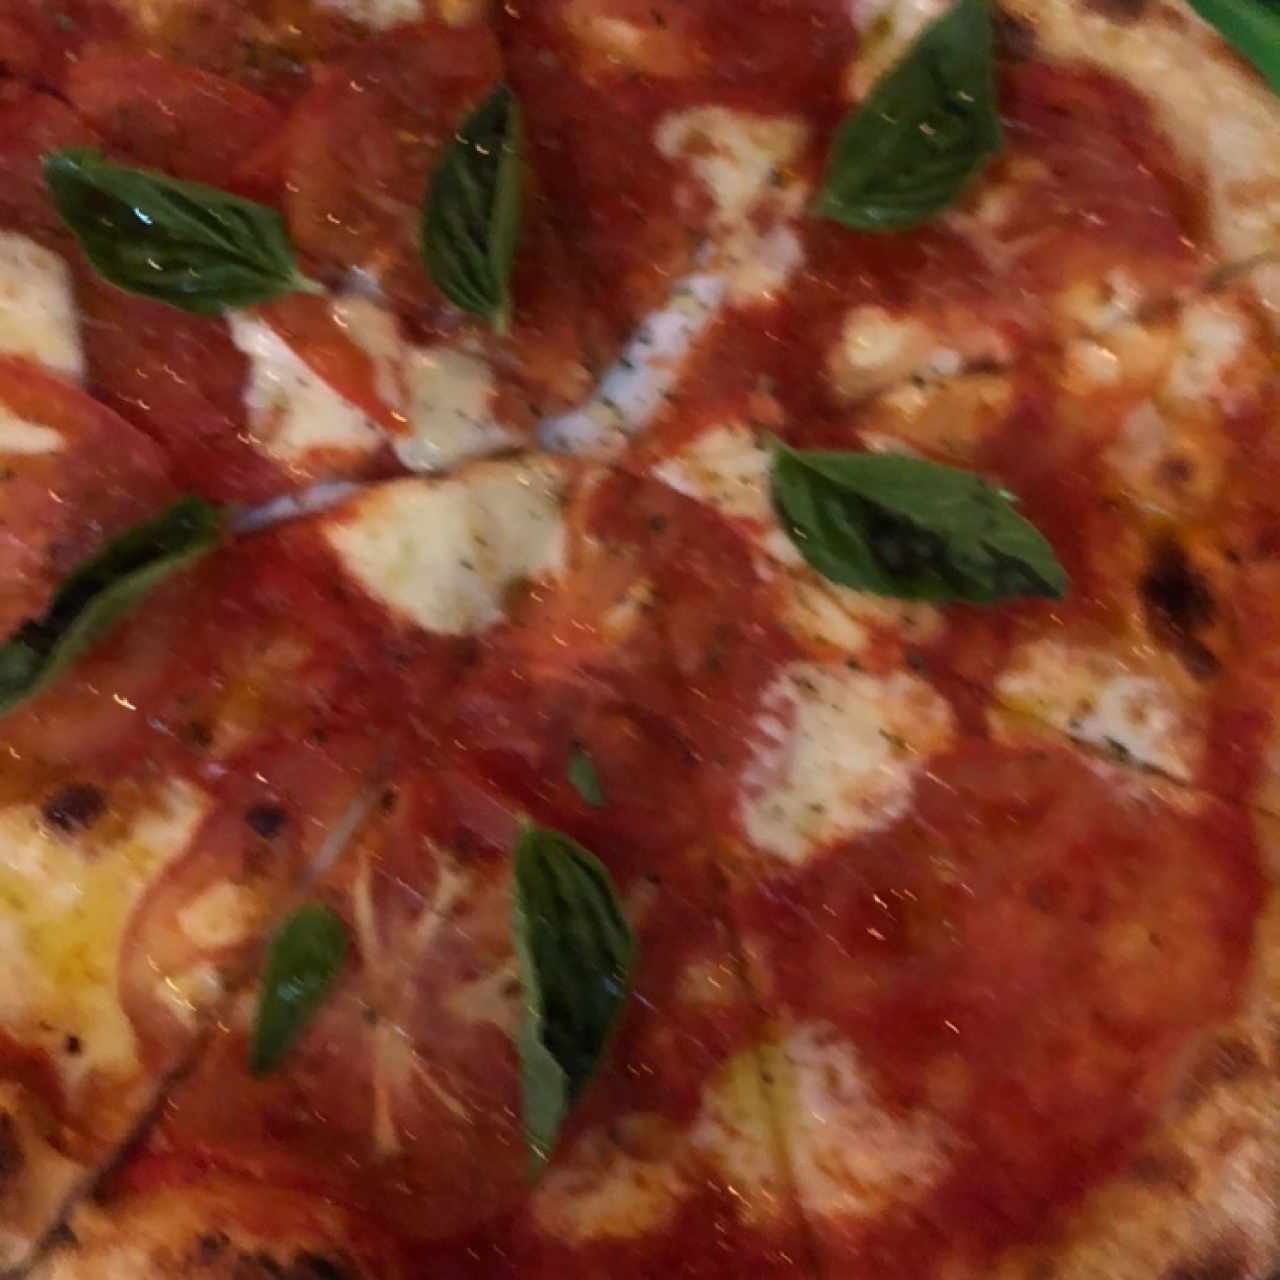 Pizzas Tradicionales - Magarita